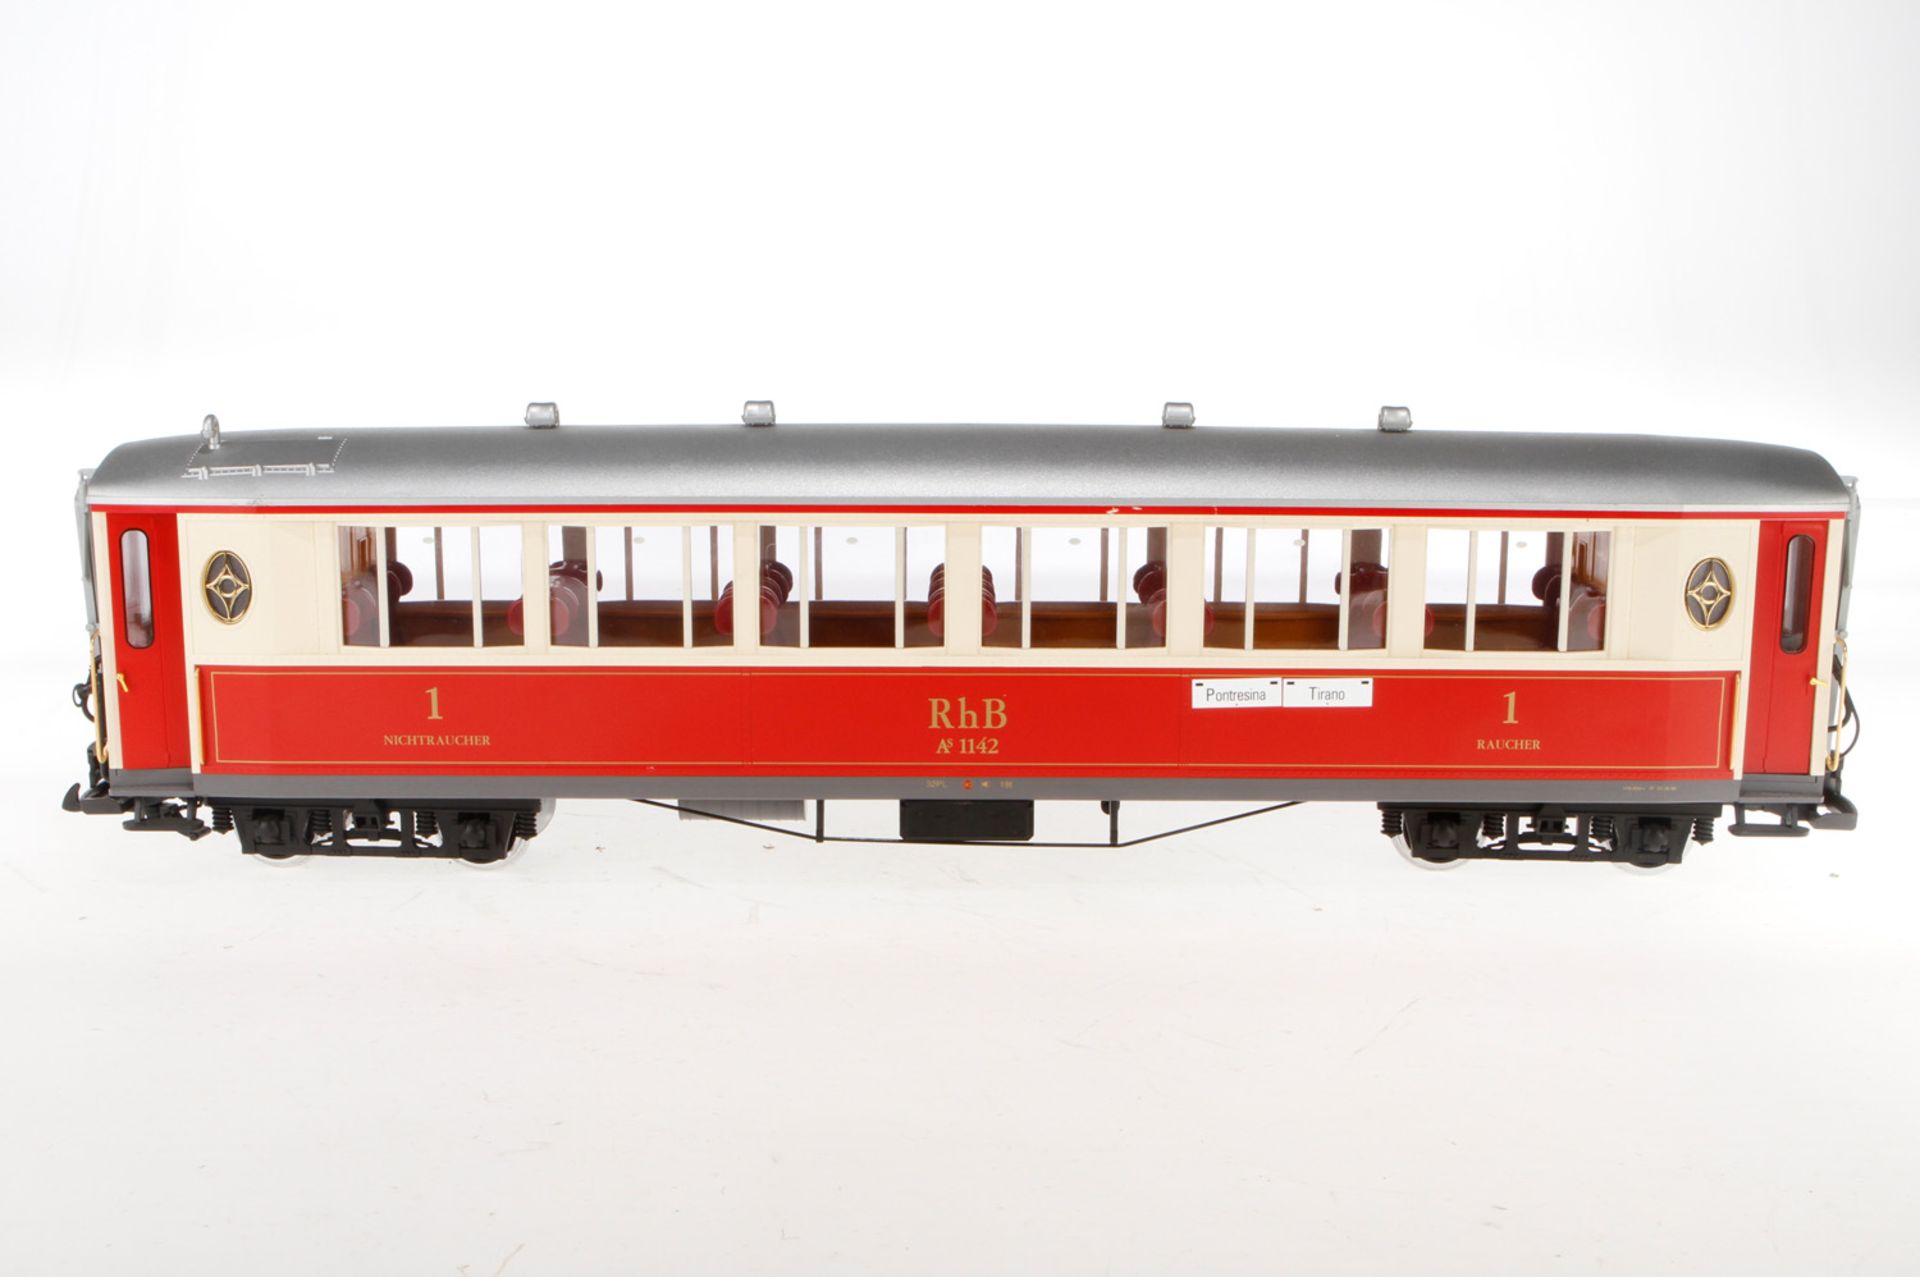 LGB Personenwagen "RhB AS 1142", weiß/rot, mit Inneneinrichtung und Beleuchtung, Alterungsspuren,